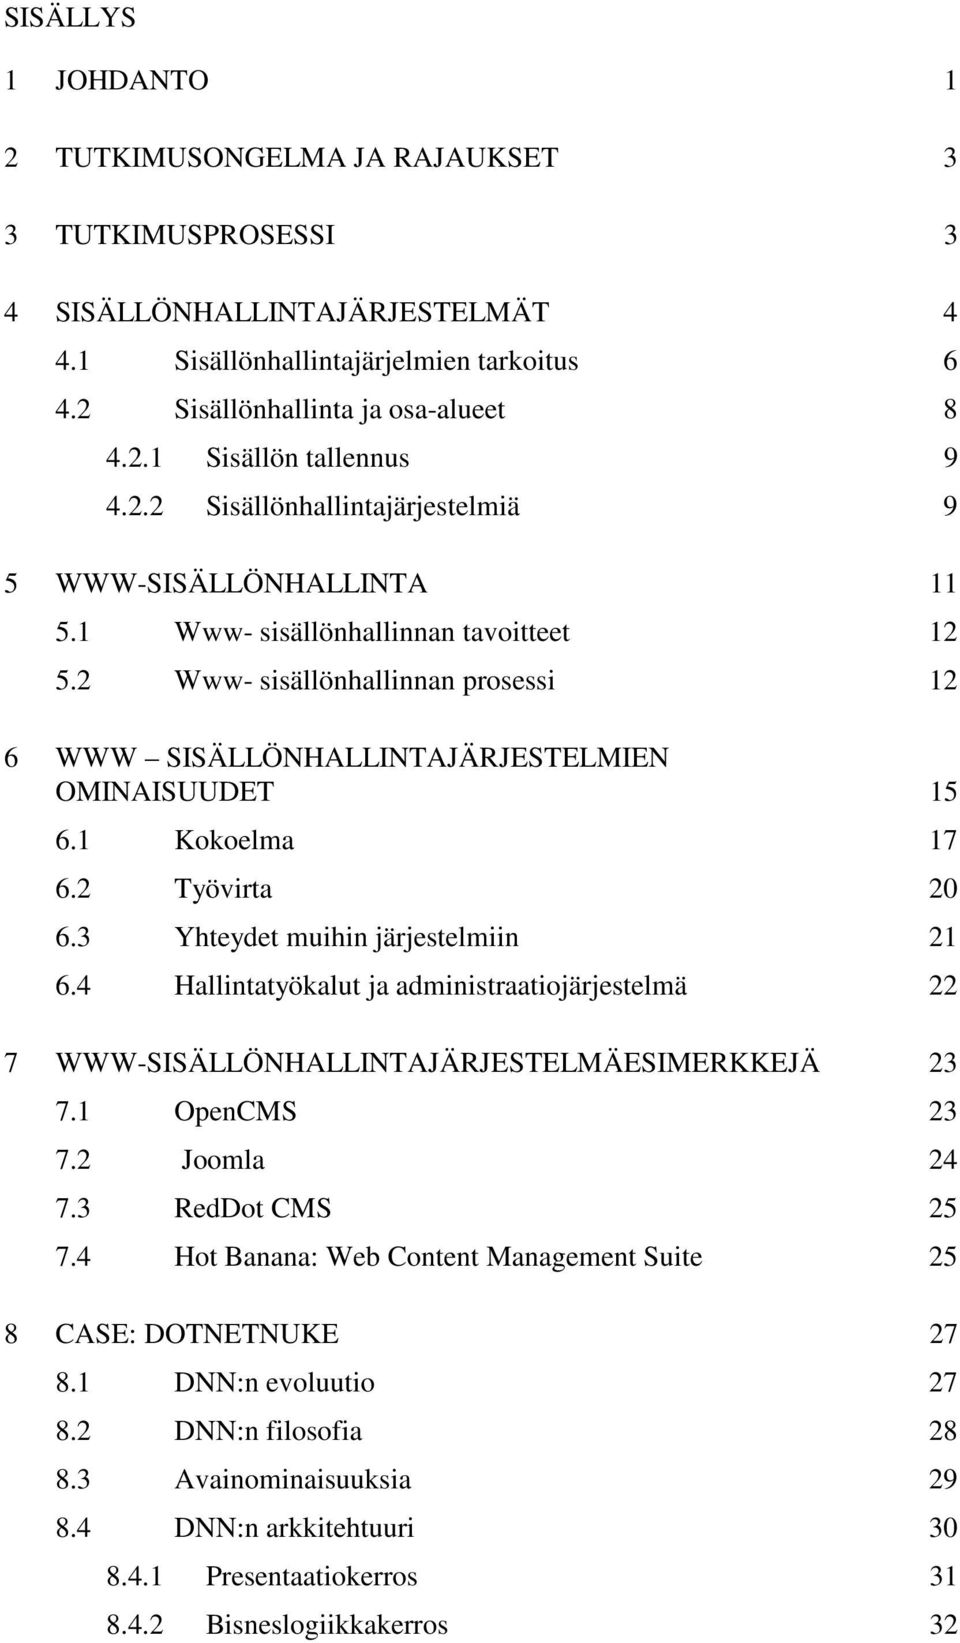 1 Kokoelma 17 6.2 Työvirta 20 6.3 Yhteydet muihin järjestelmiin 21 6.4 Hallintatyökalut ja administraatiojärjestelmä 22 7 WWW-SISÄLLÖNHALLINTAJÄRJESTELMÄESIMERKKEJÄ 23 7.1 OpenCMS 23 7.2 Joomla 24 7.